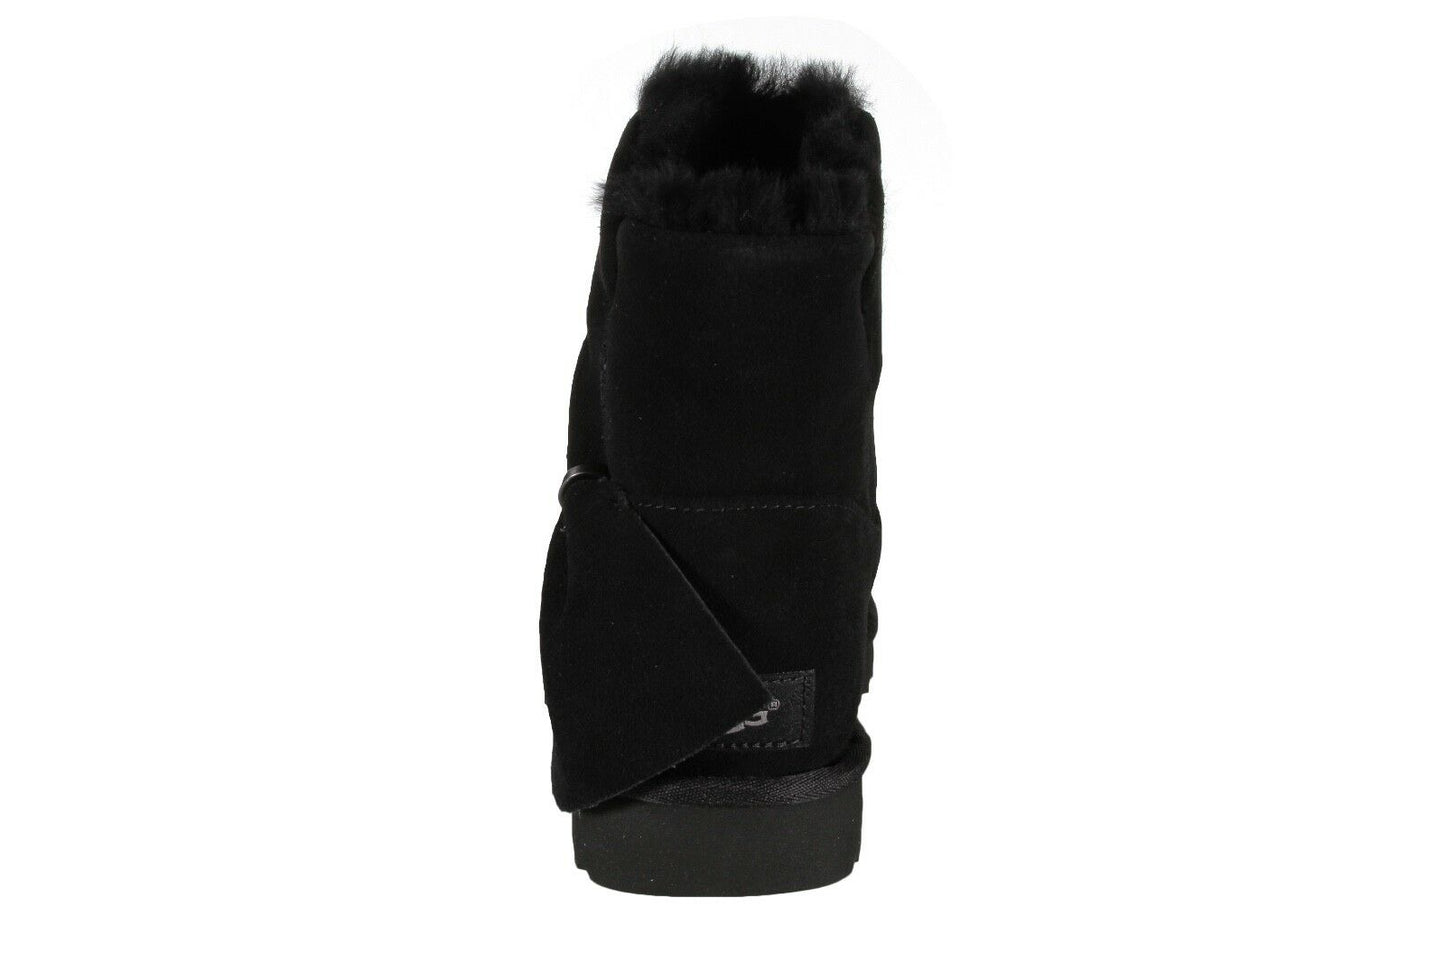 UGG Australia Classic Mini Twist Women's Boots Black 1099912-BLK